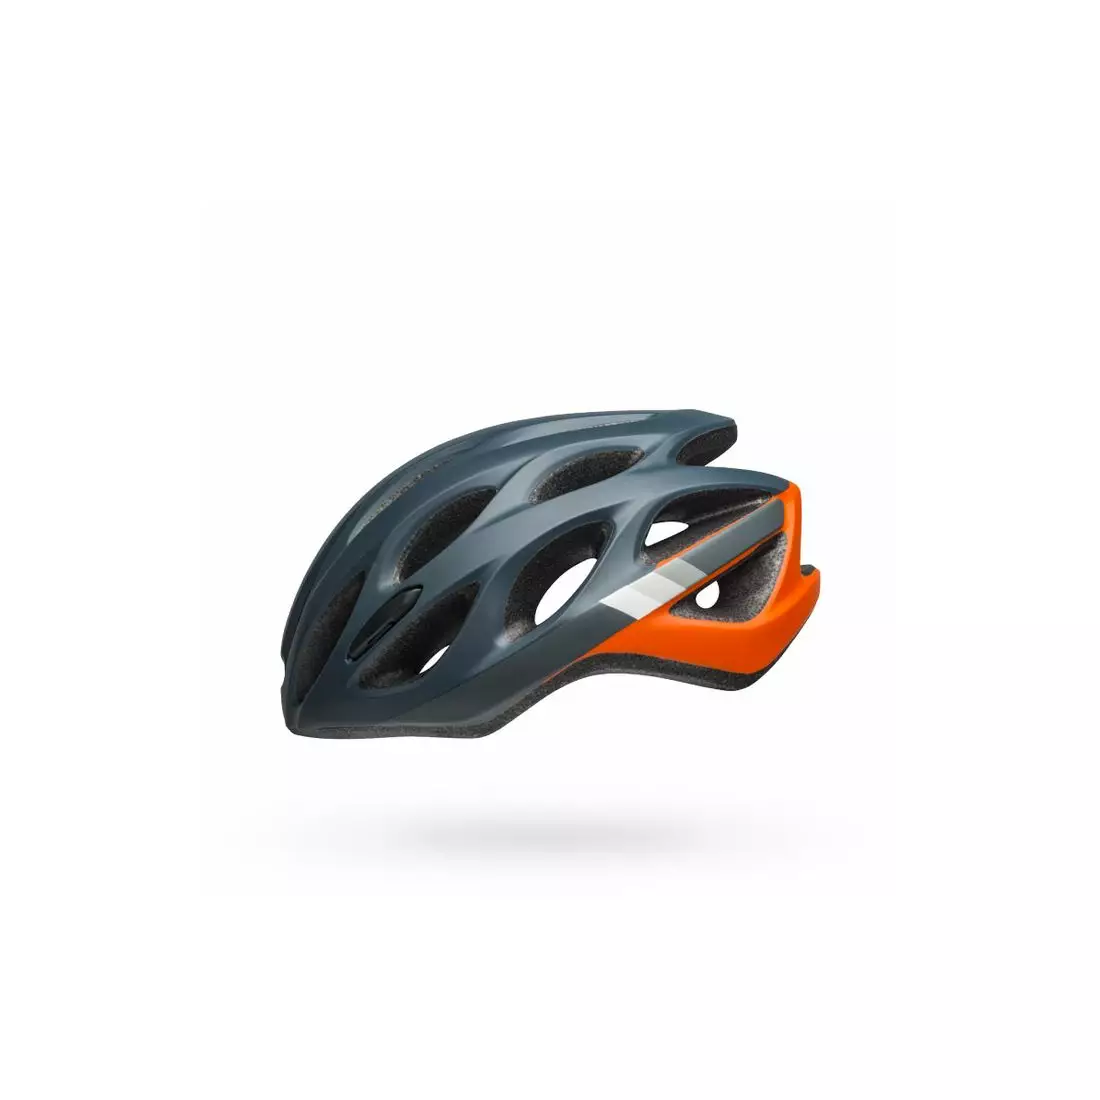 Bicycle road helmet BELL DRAFT speed matte slate gray orange 